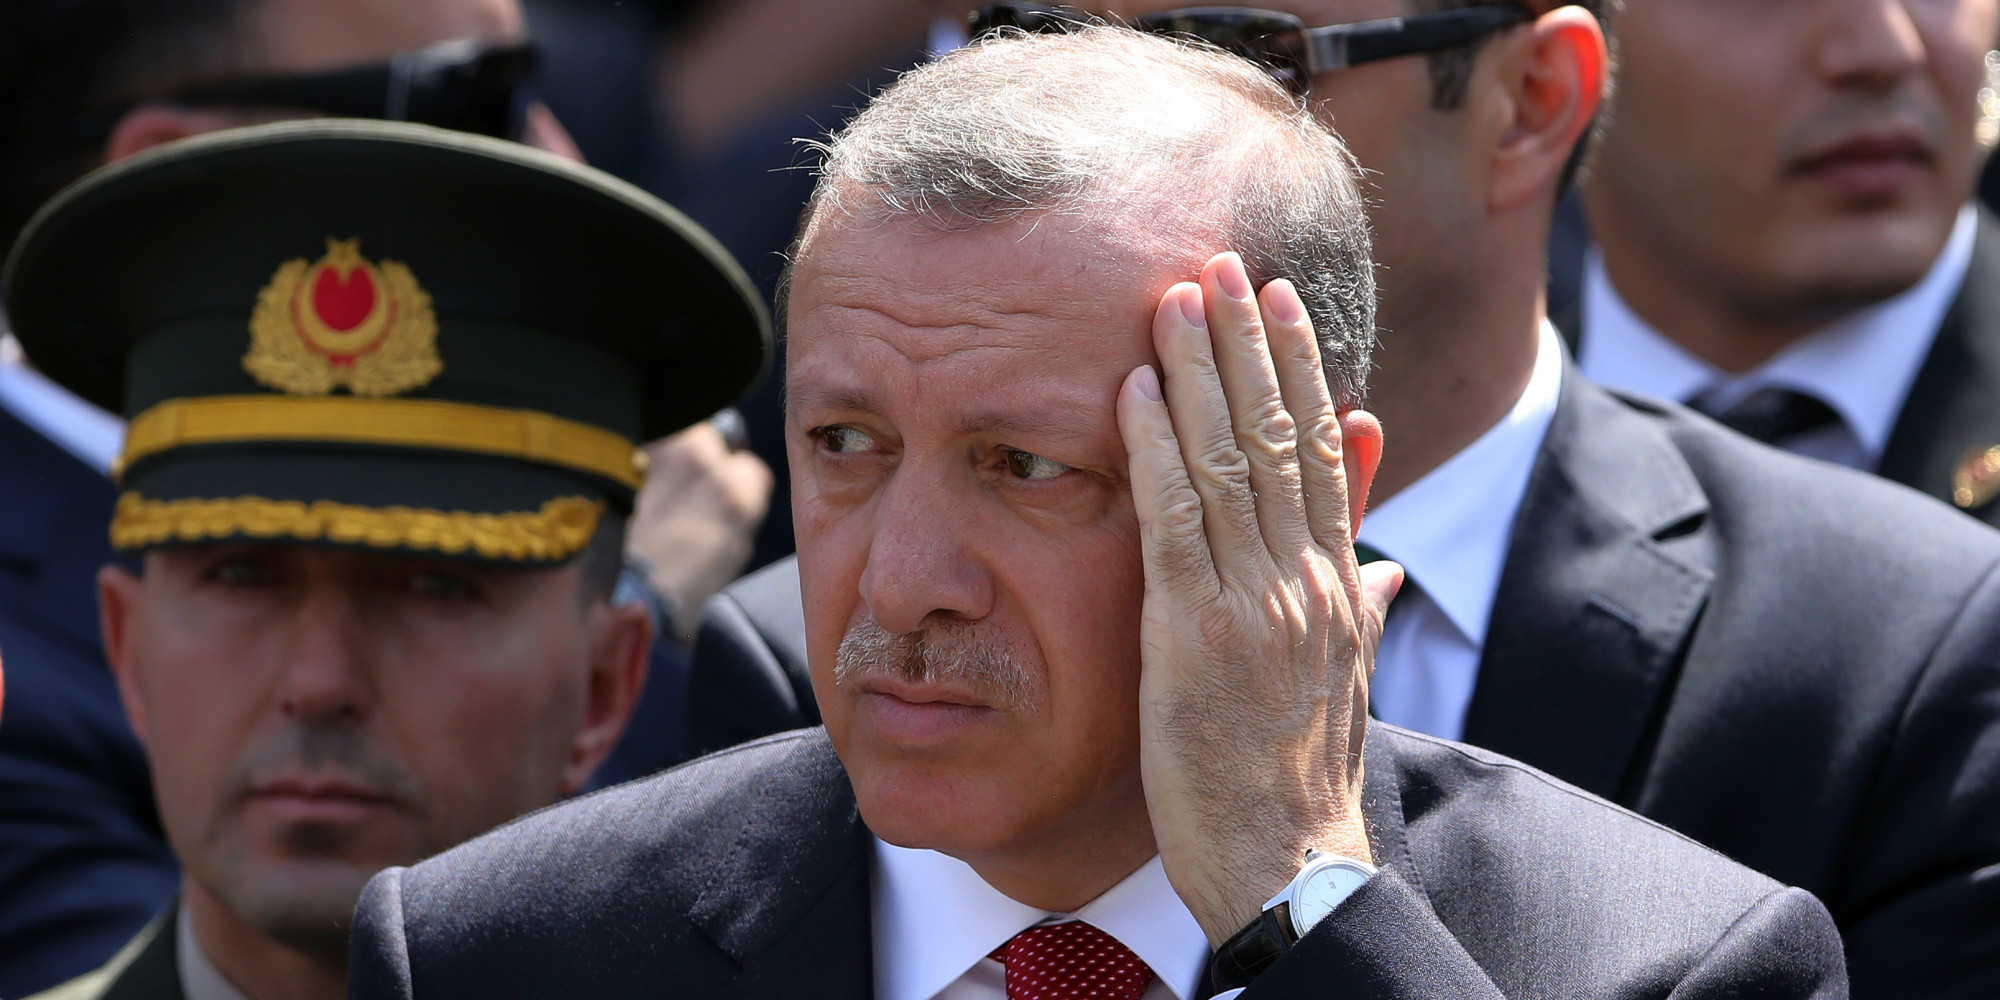 Р. Эрдоган примерил на себя костюм миротворца. Весьма топорно.